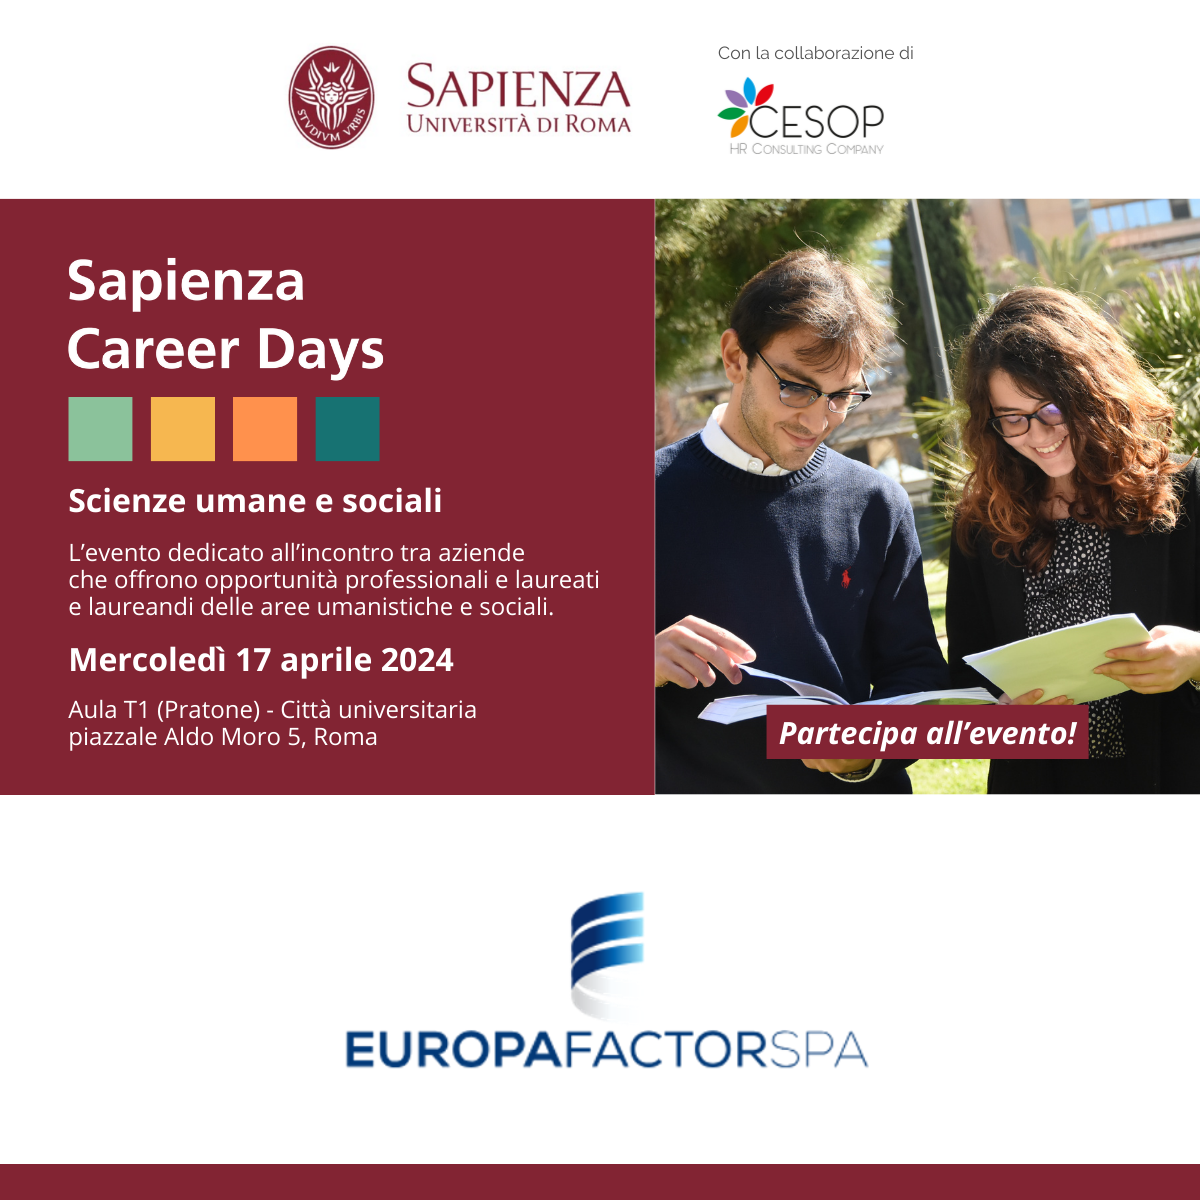 Ti aspettiamo numerosi per un'esperienza indimenticabile al Sapienza Career Days con Europa Factor!